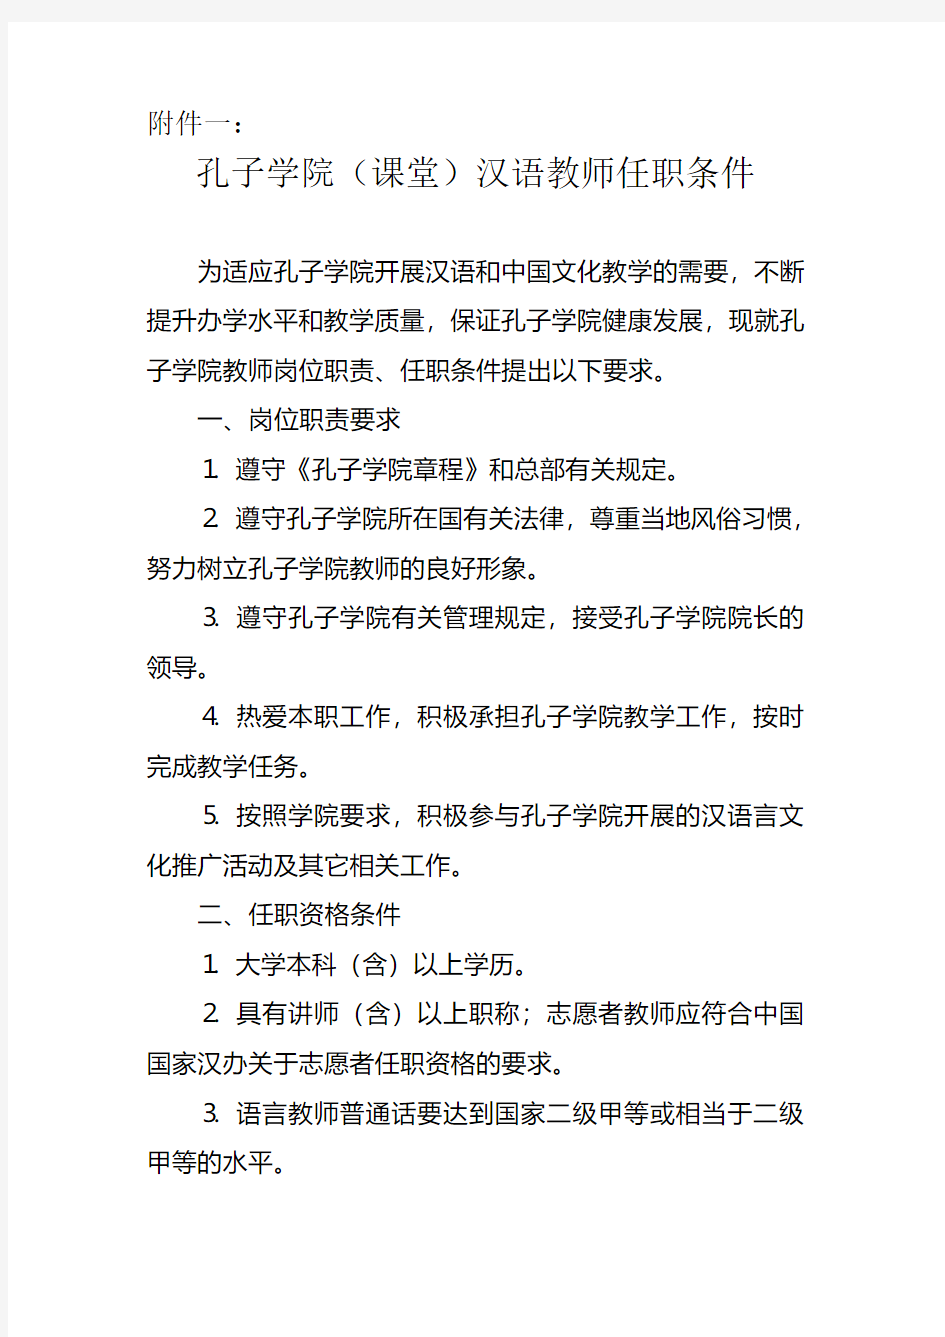 孔子学院(课堂)汉语教师任职条件